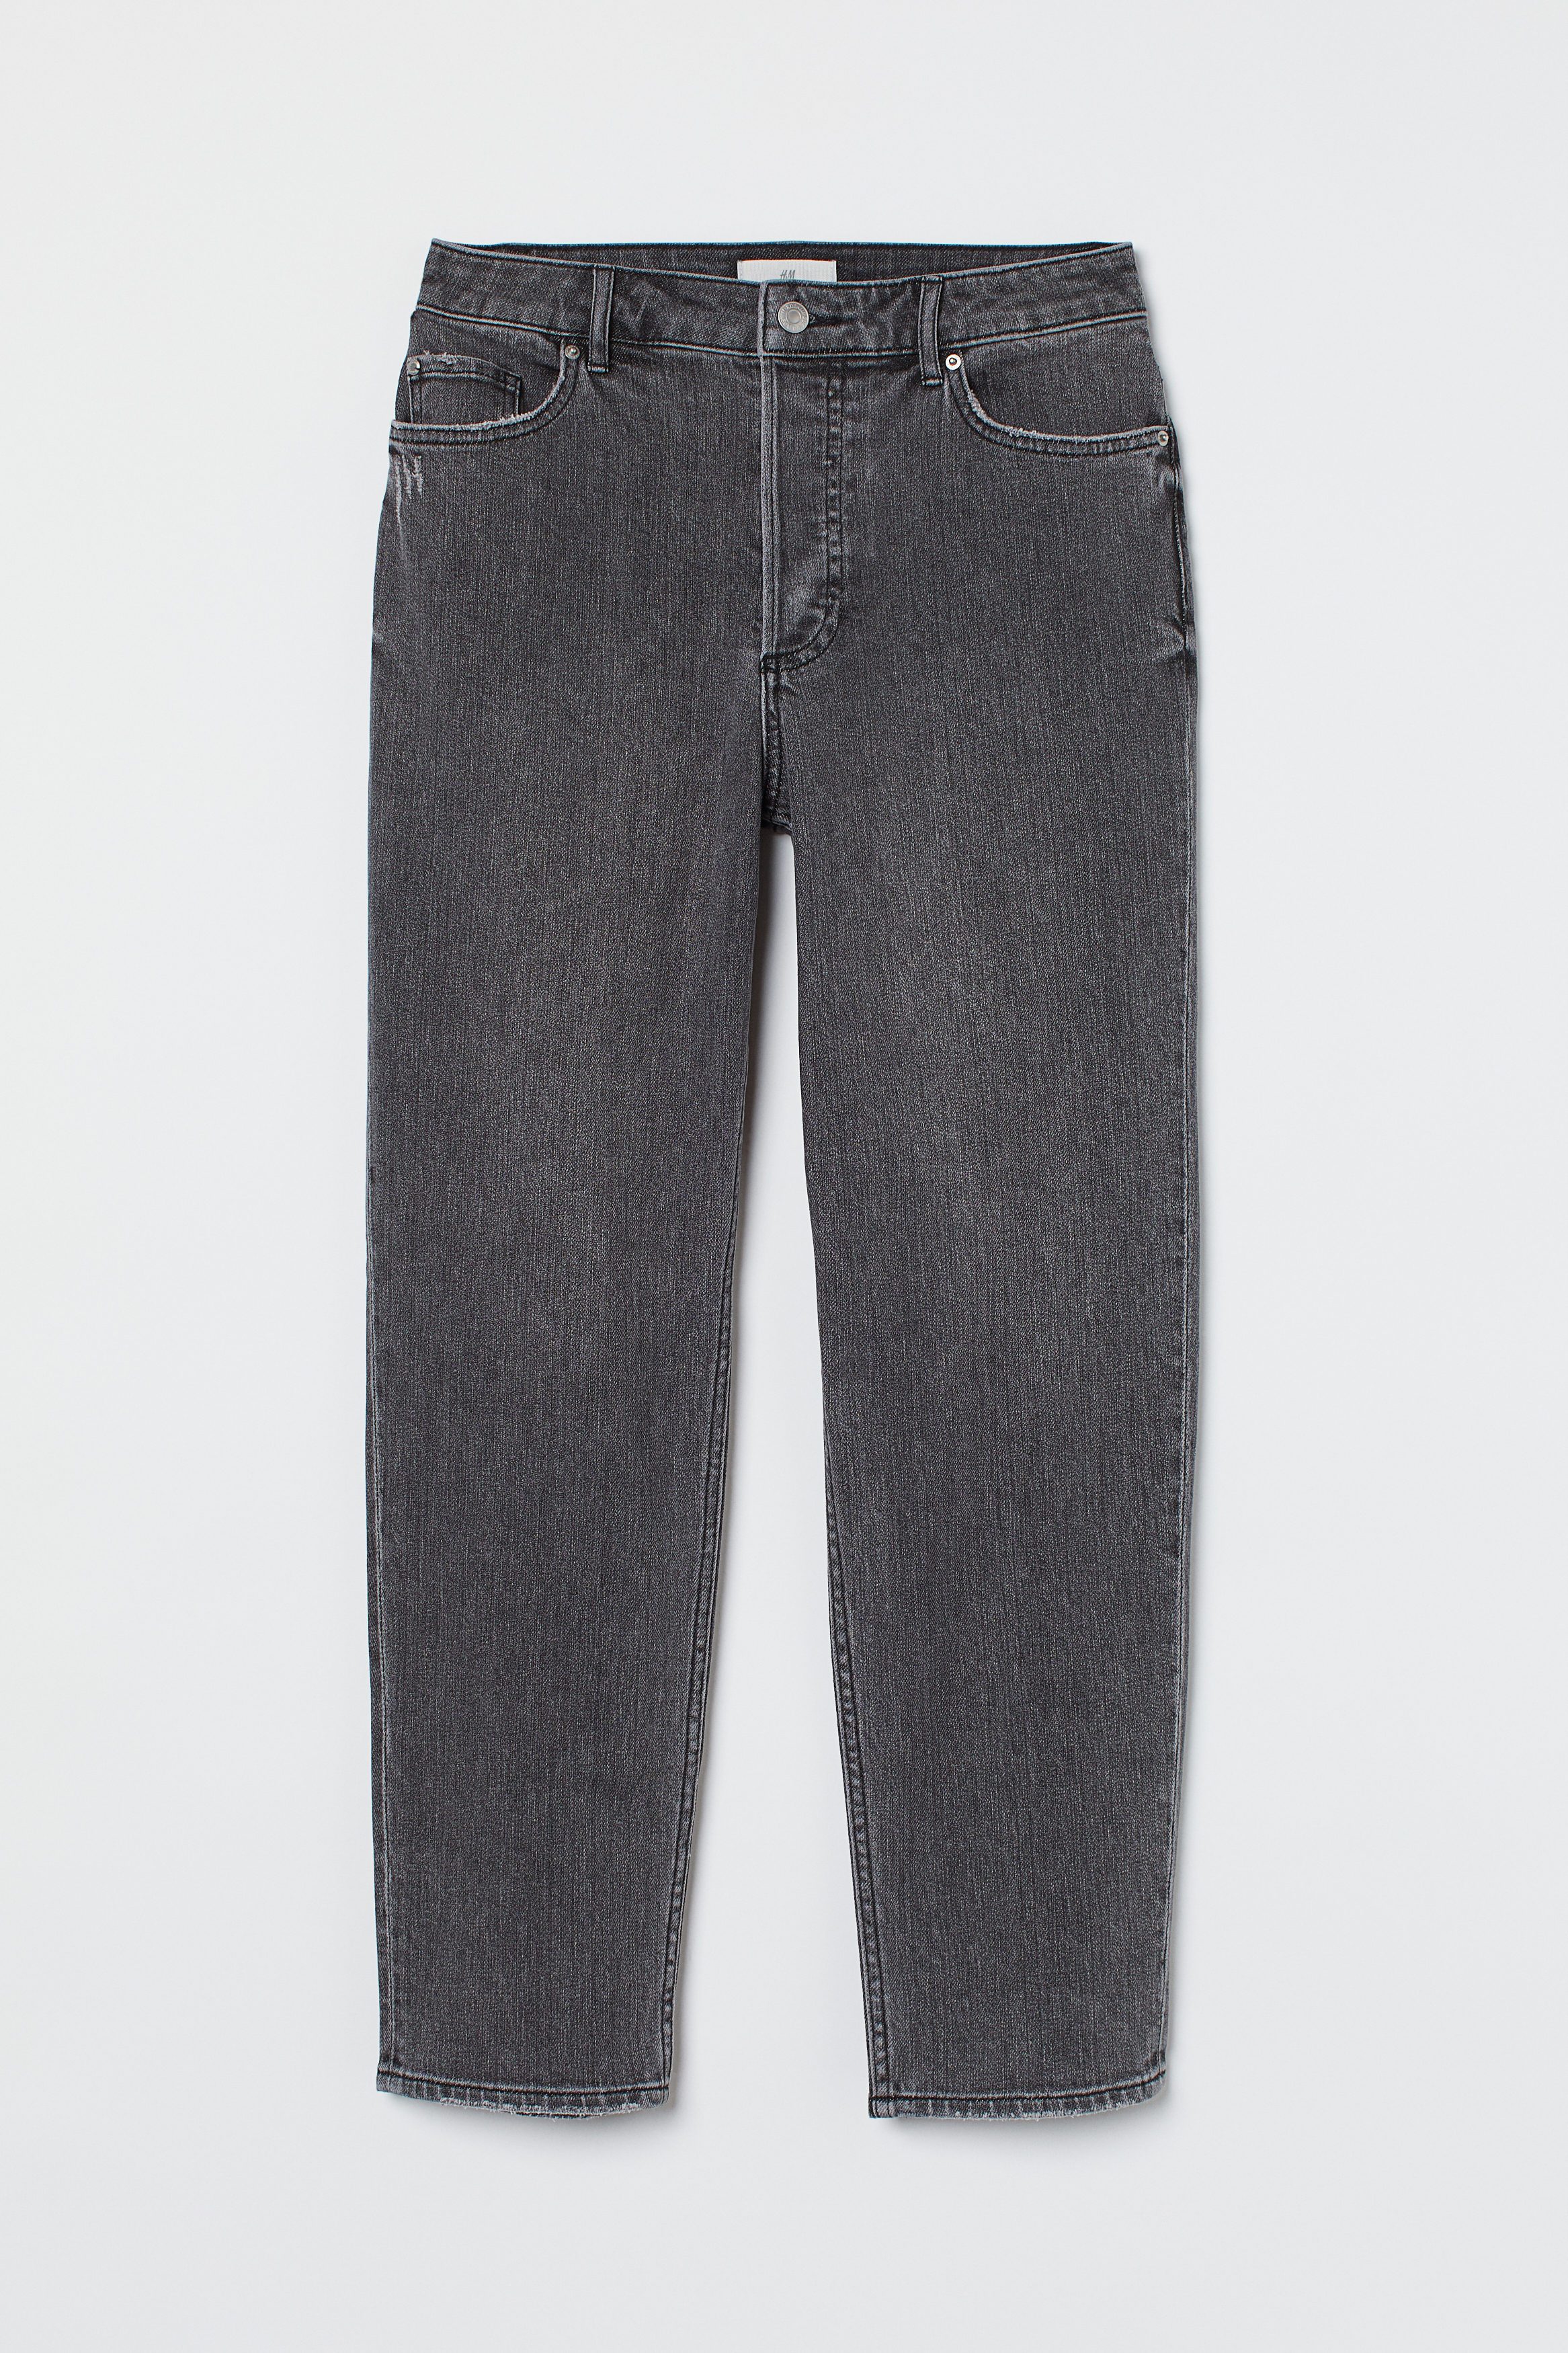 Billede af H&M Slim Mom Ankle Jeans Mørkegrå, Skinny jeans. Farve: Dark grey I størrelse 32